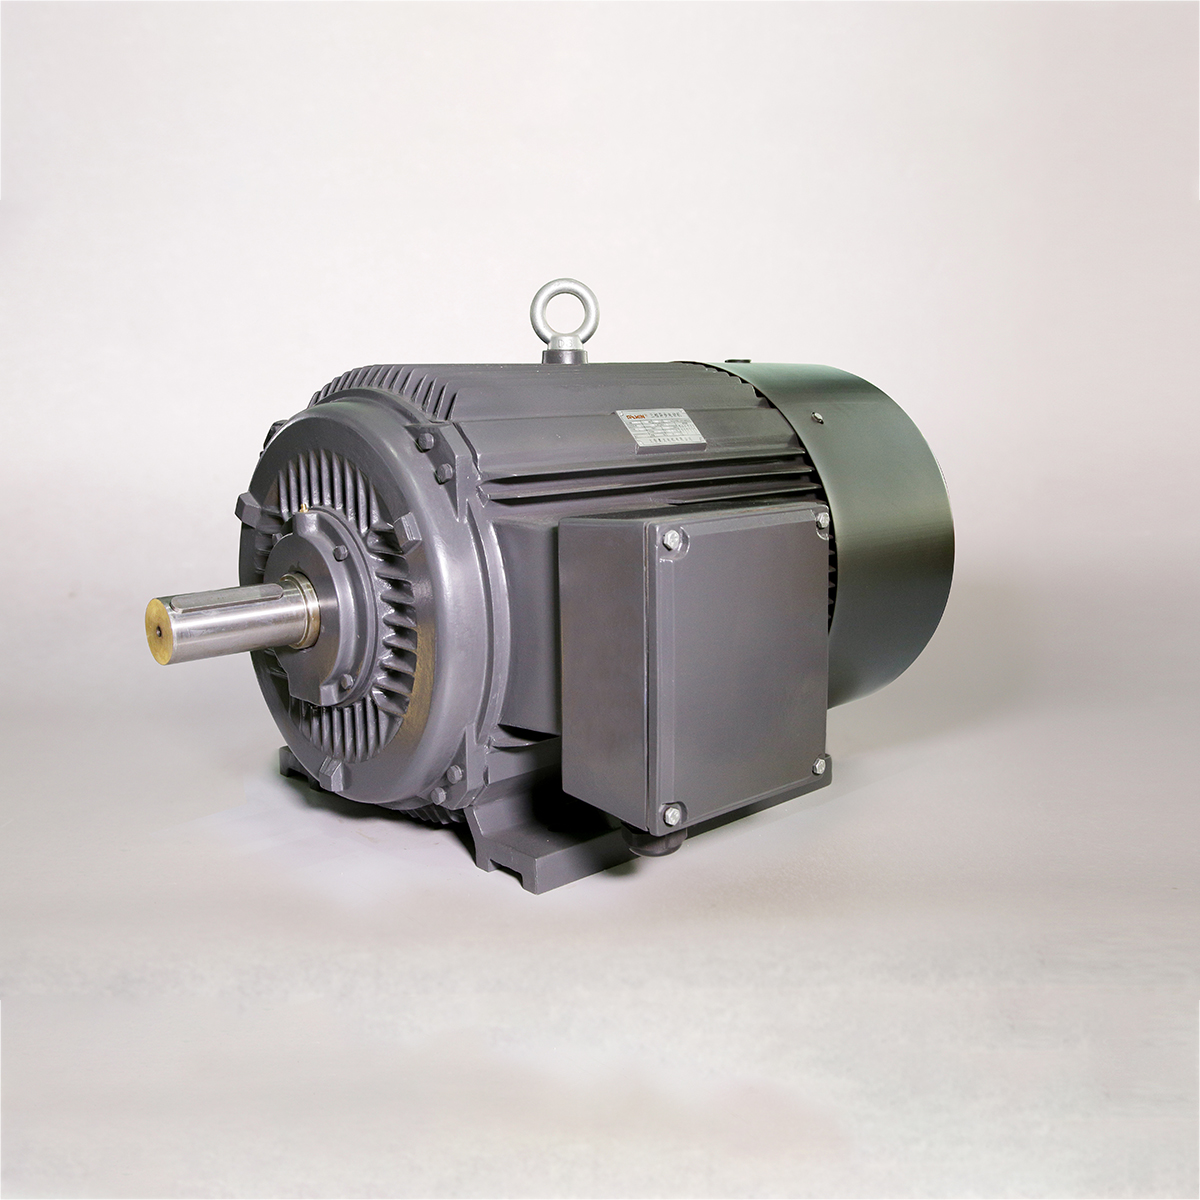 Yakaderera Voltage 3-Phase Asynchronous Motor ine Cast Iron Housing